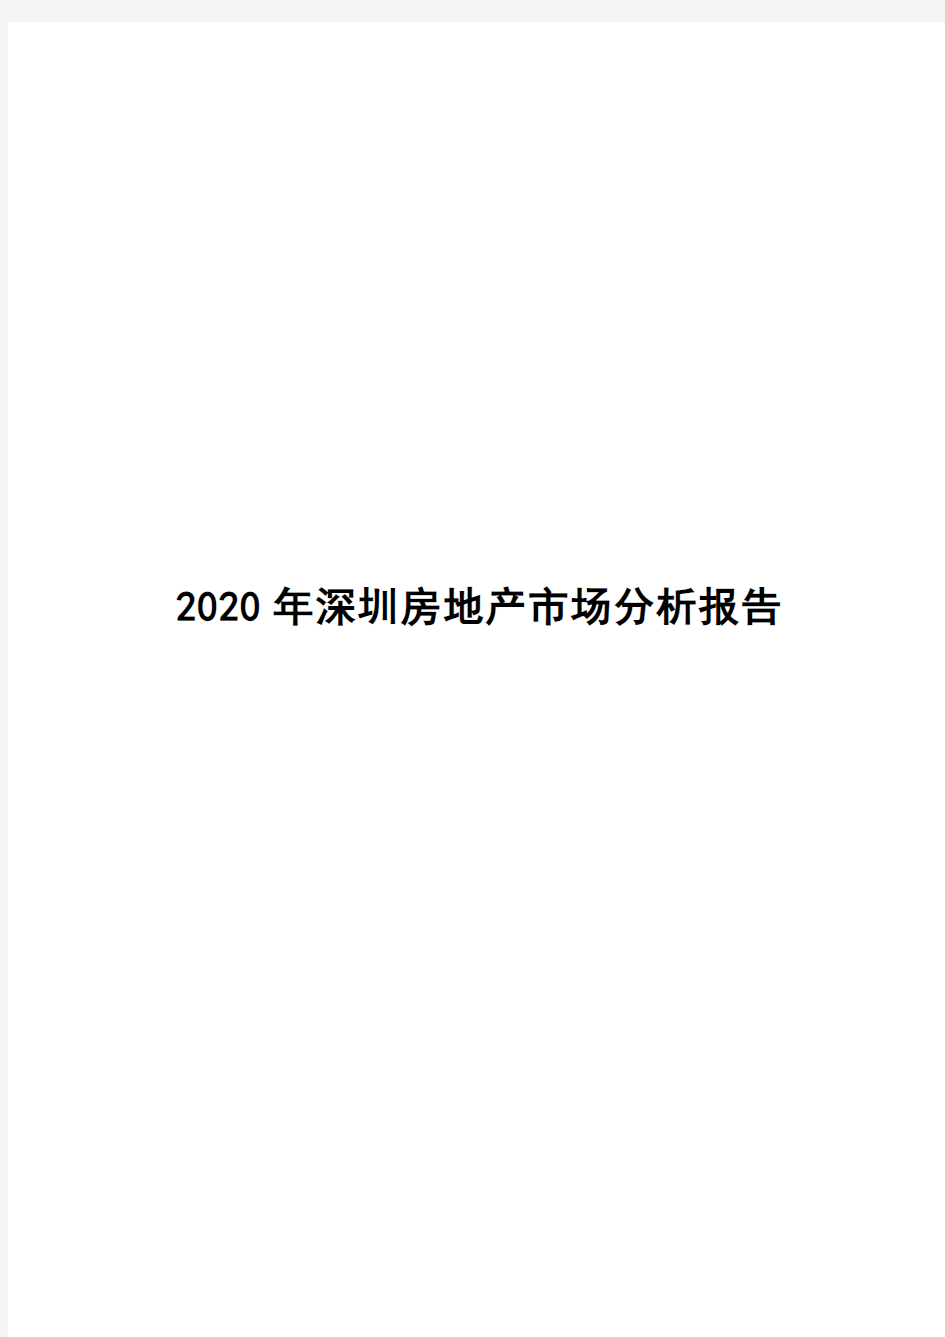 2020年深圳房地产市场分析报告